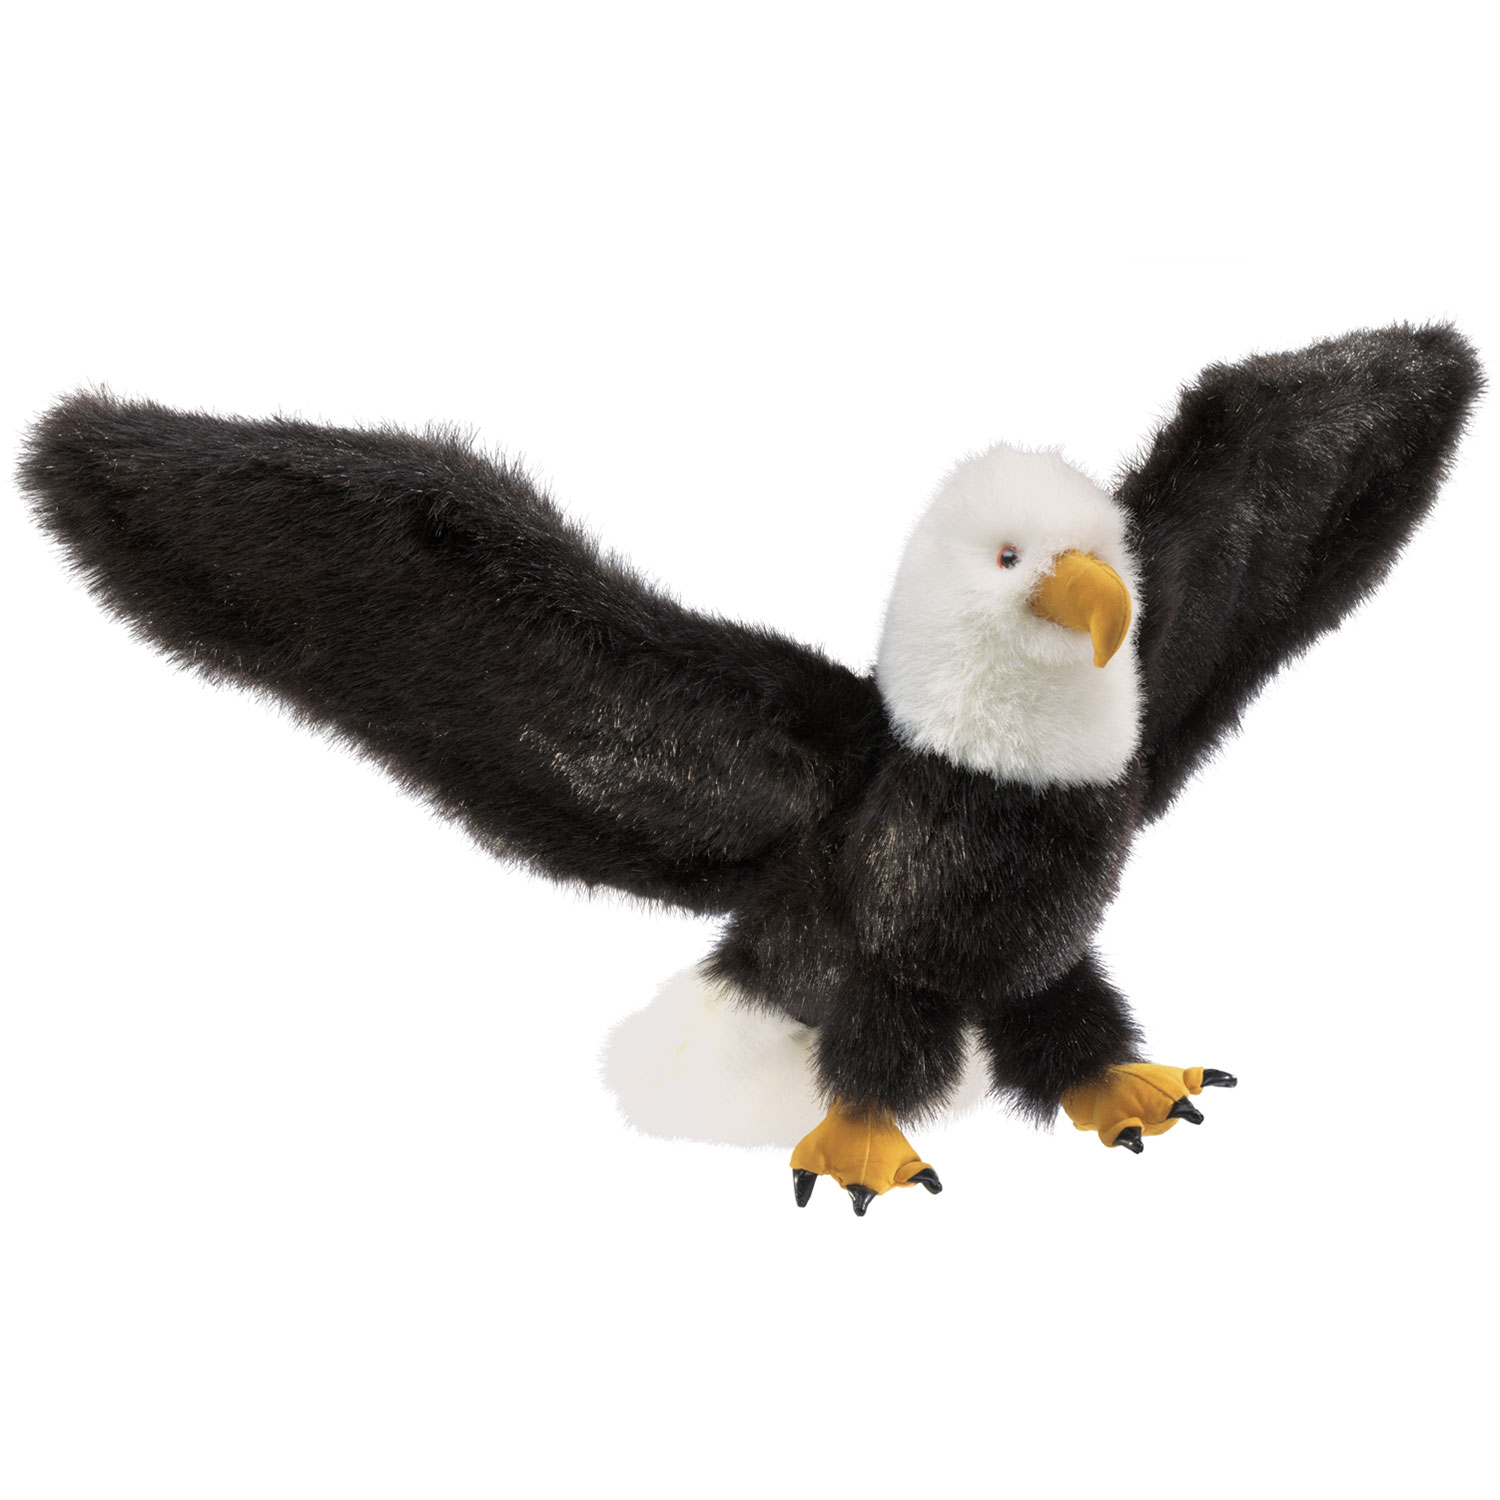 Adler / Eagle